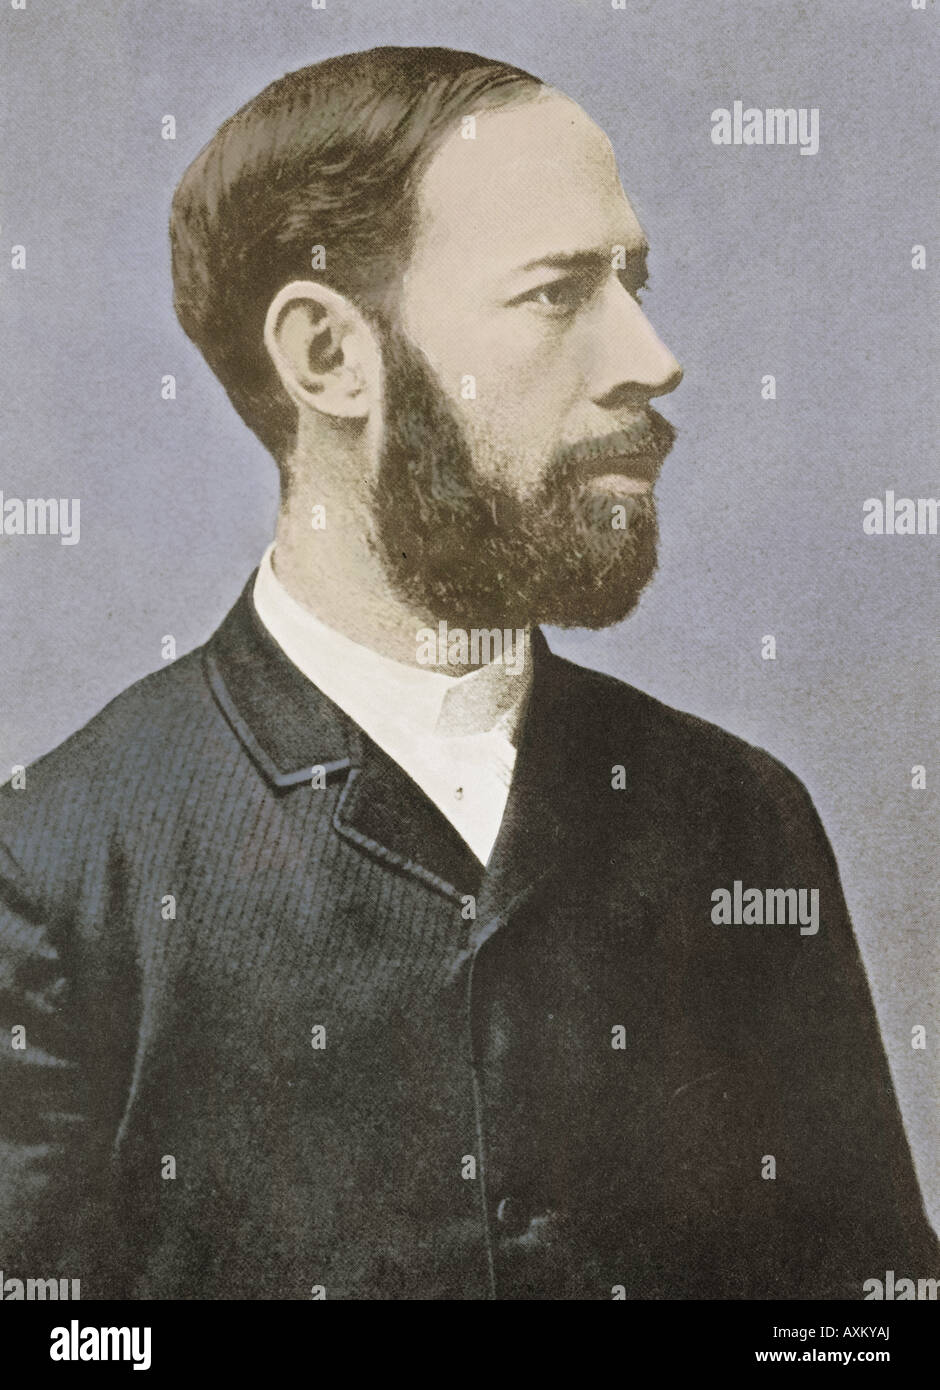 Porträt von Heinrich Rudolf Hertz (1857-1894), deutscher Physiker und Entdecker der Radiowellen. Stockfoto